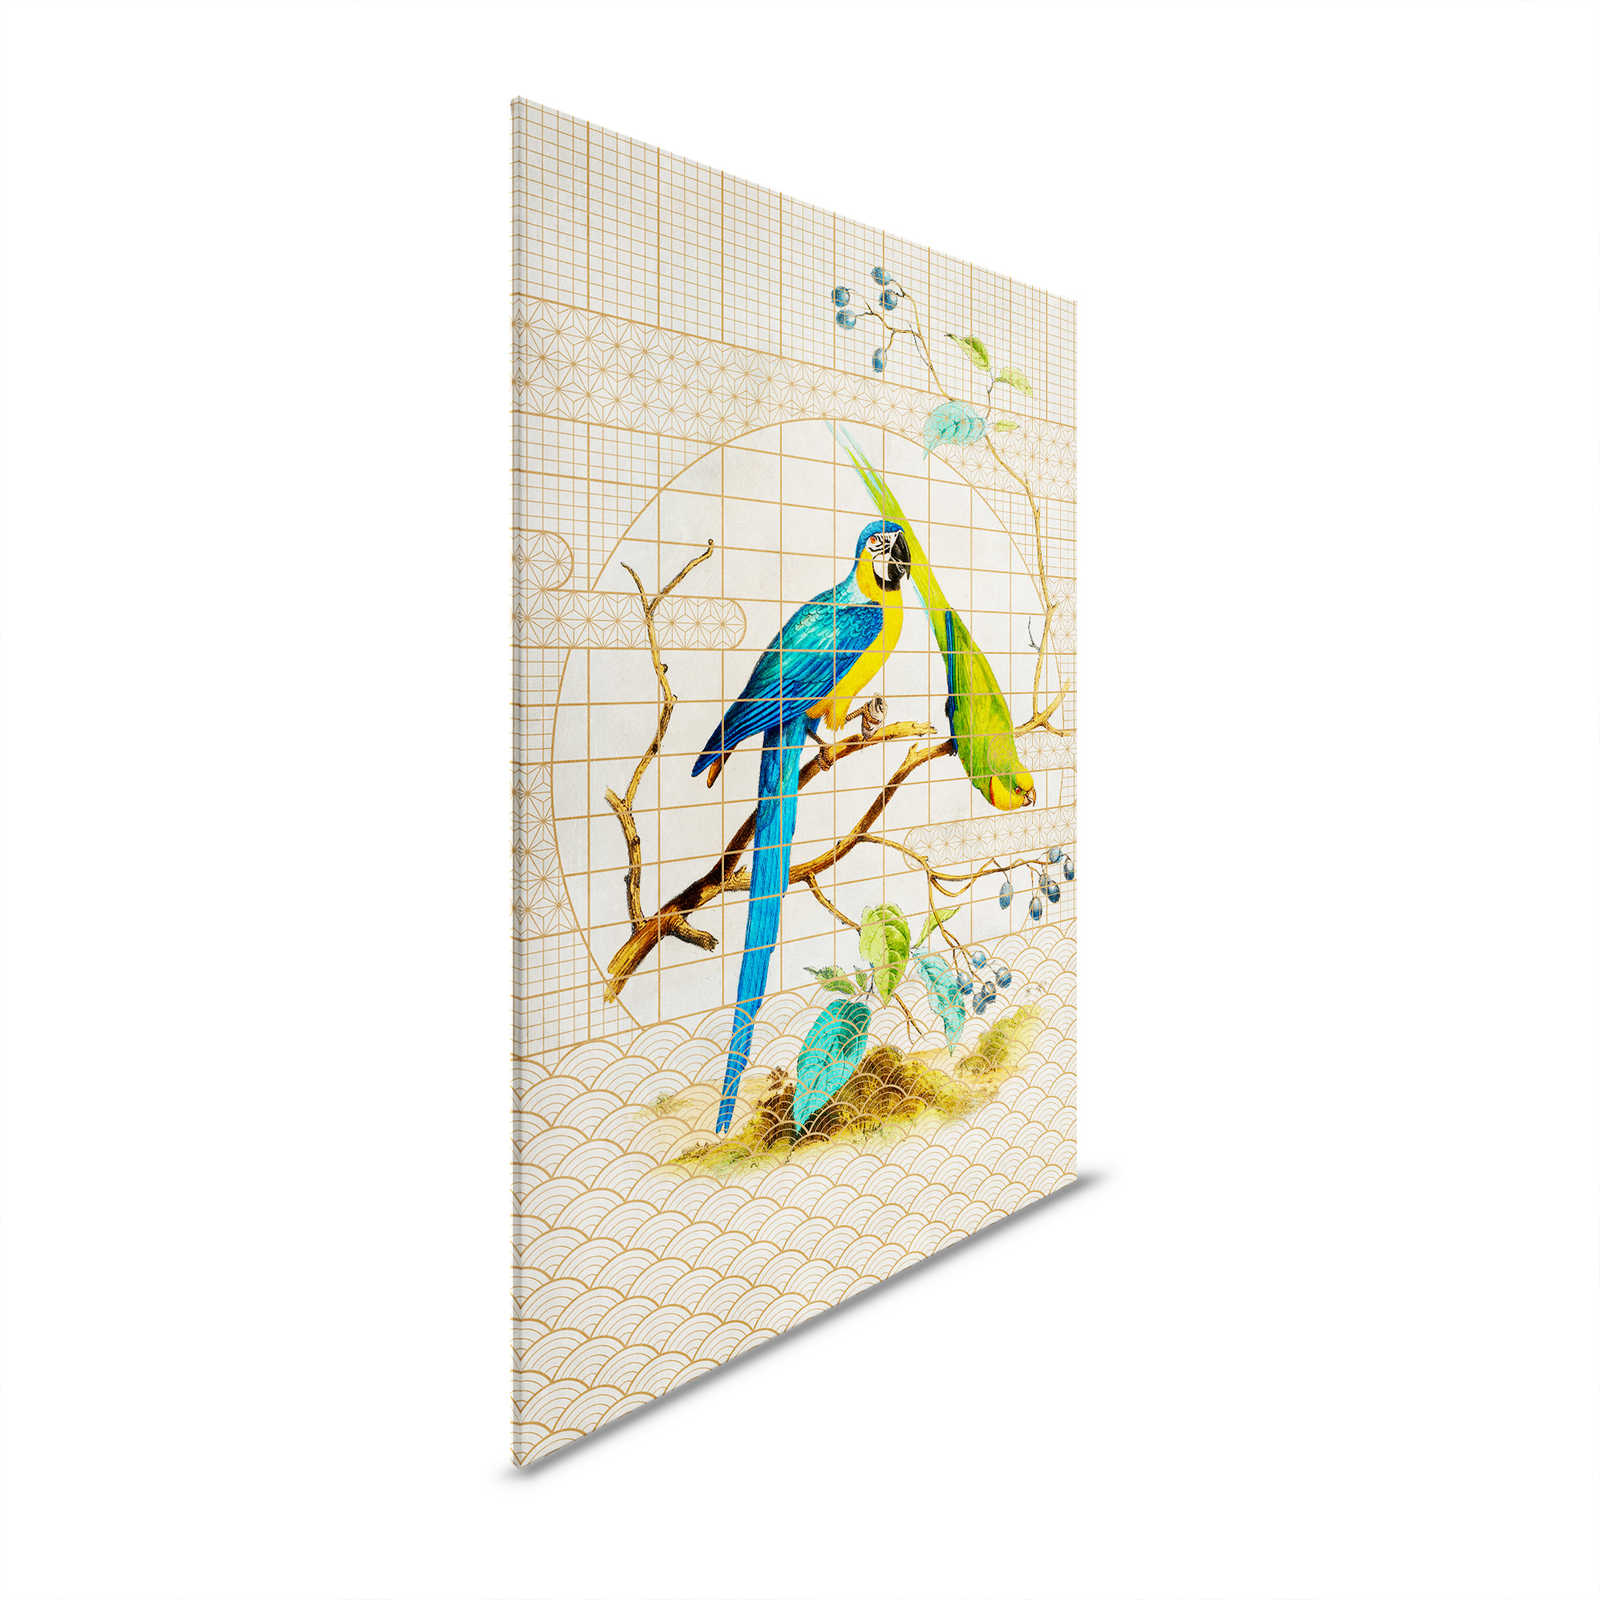 Pajarera 3 - Pintura en lienzo de estilo vintage con loros y motivos dorados - 1,20 m x 0,80 m
